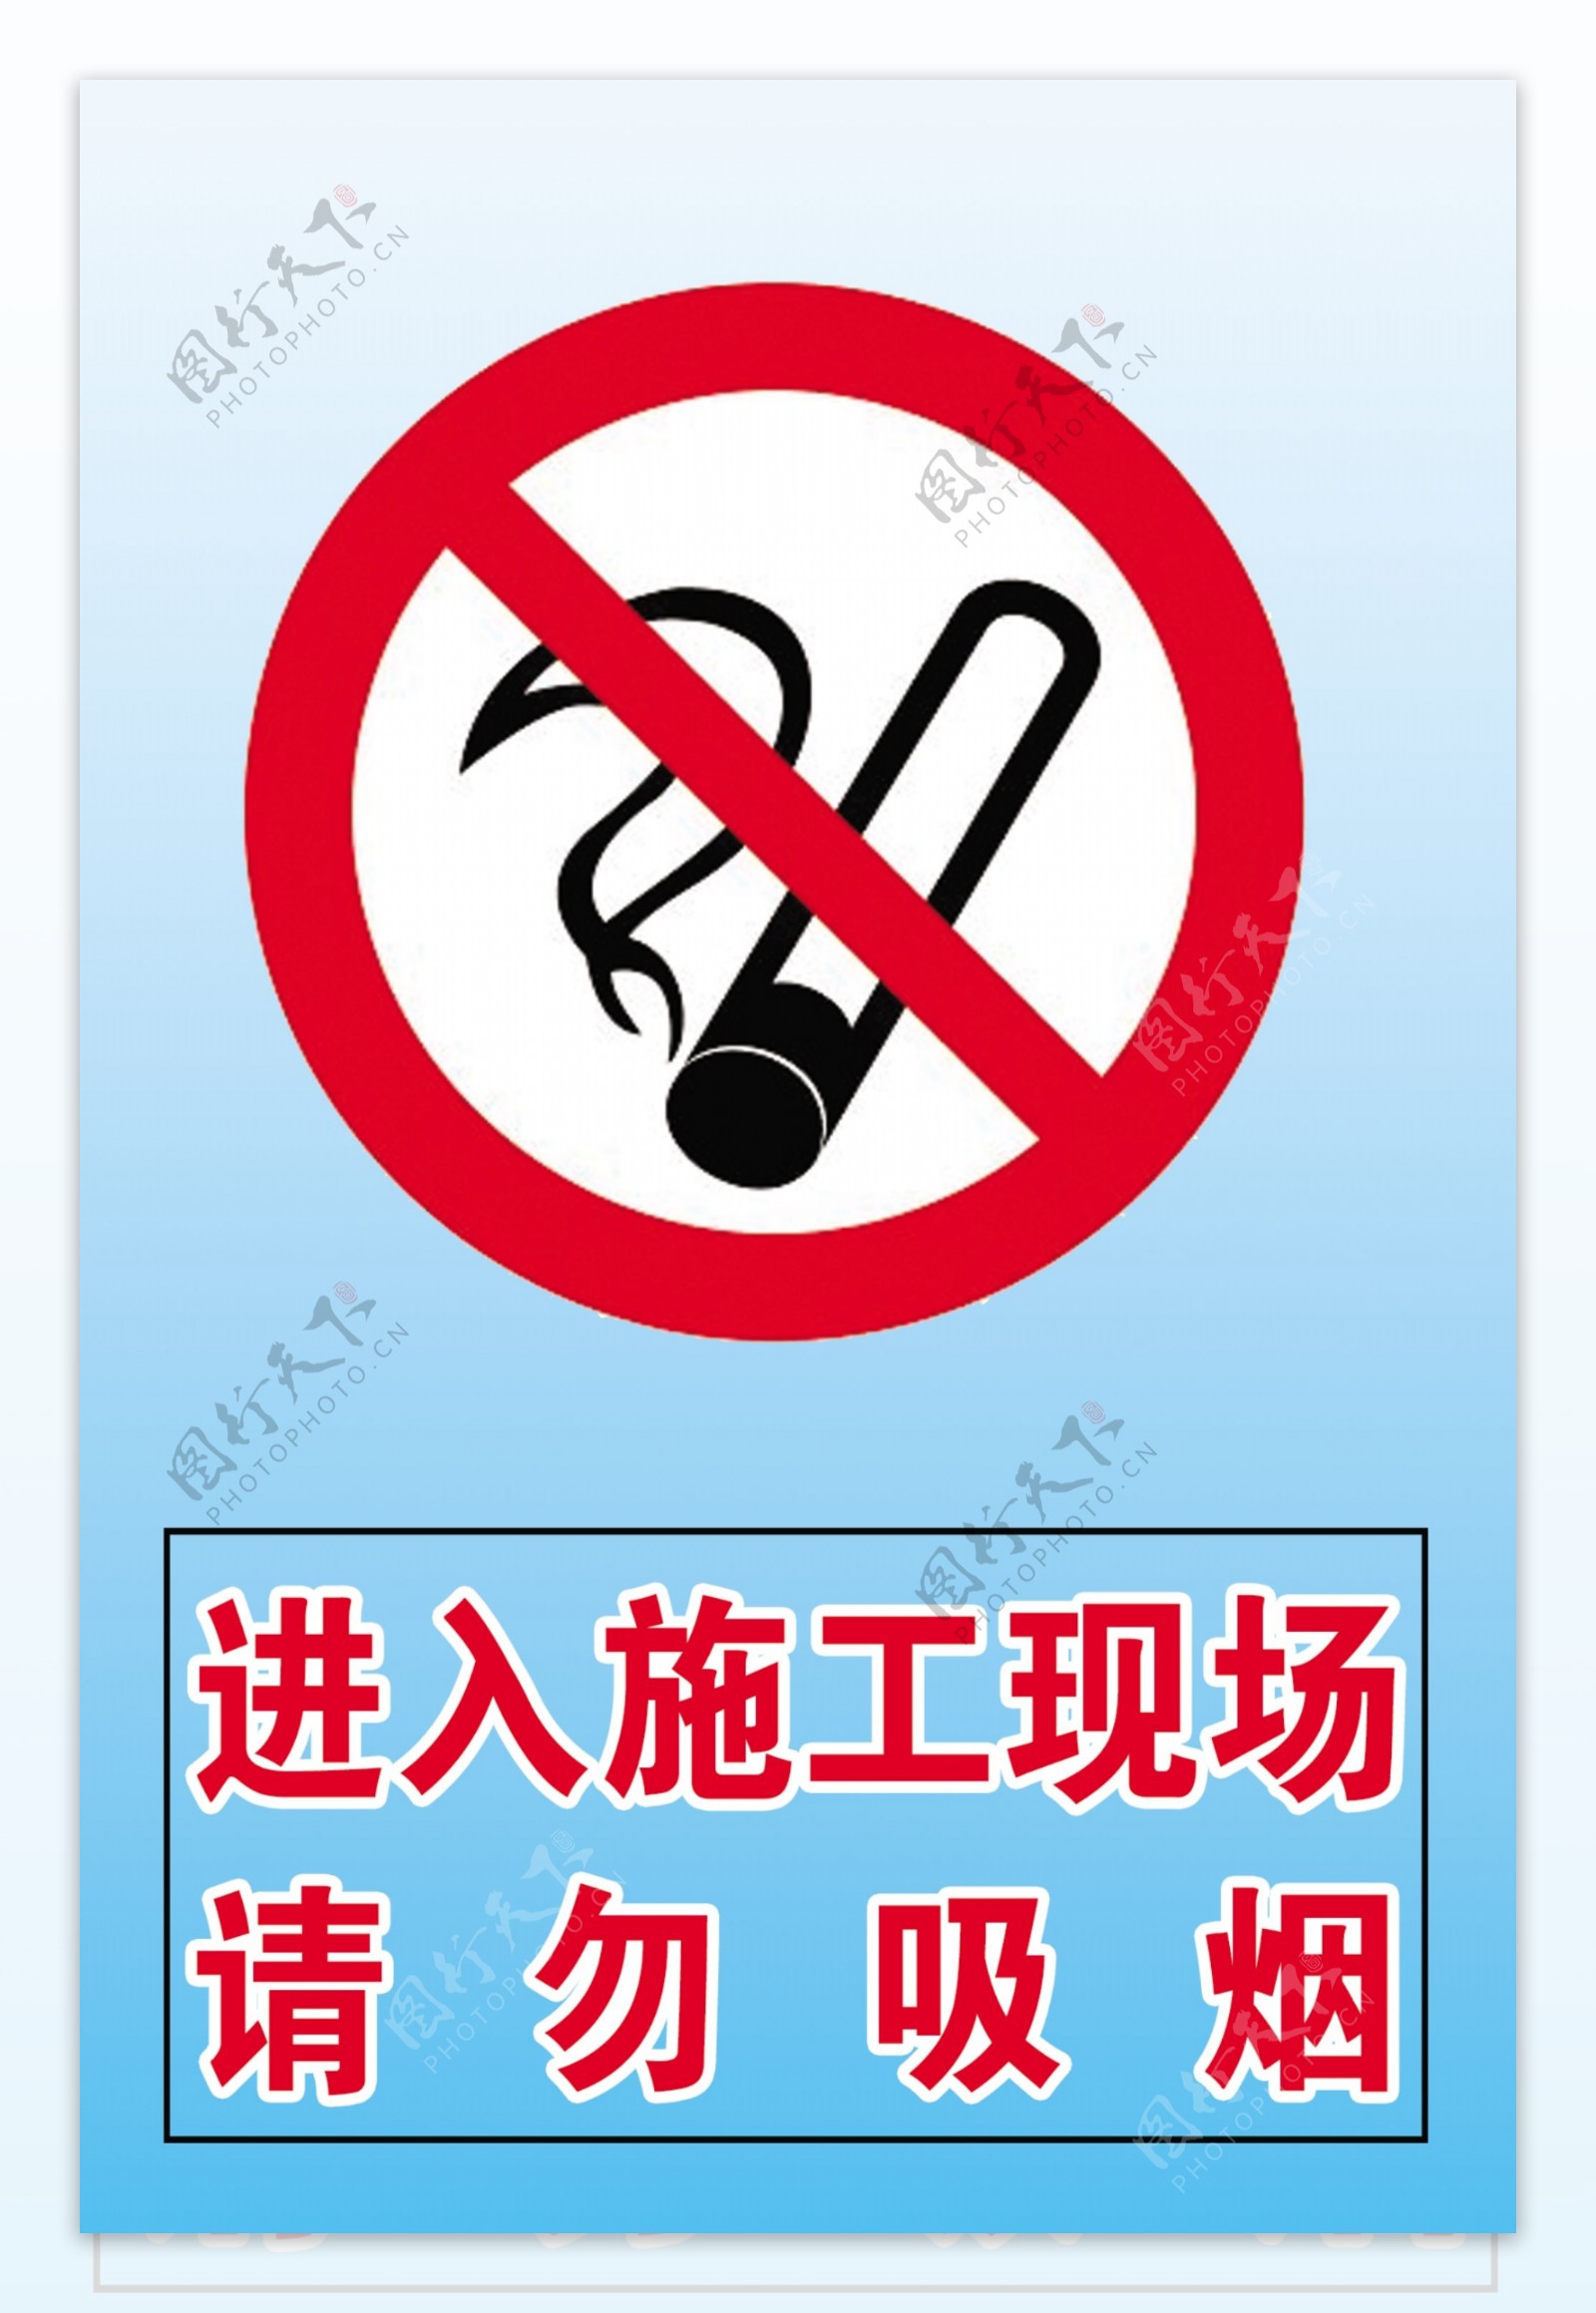 工地施工禁止吸烟标志